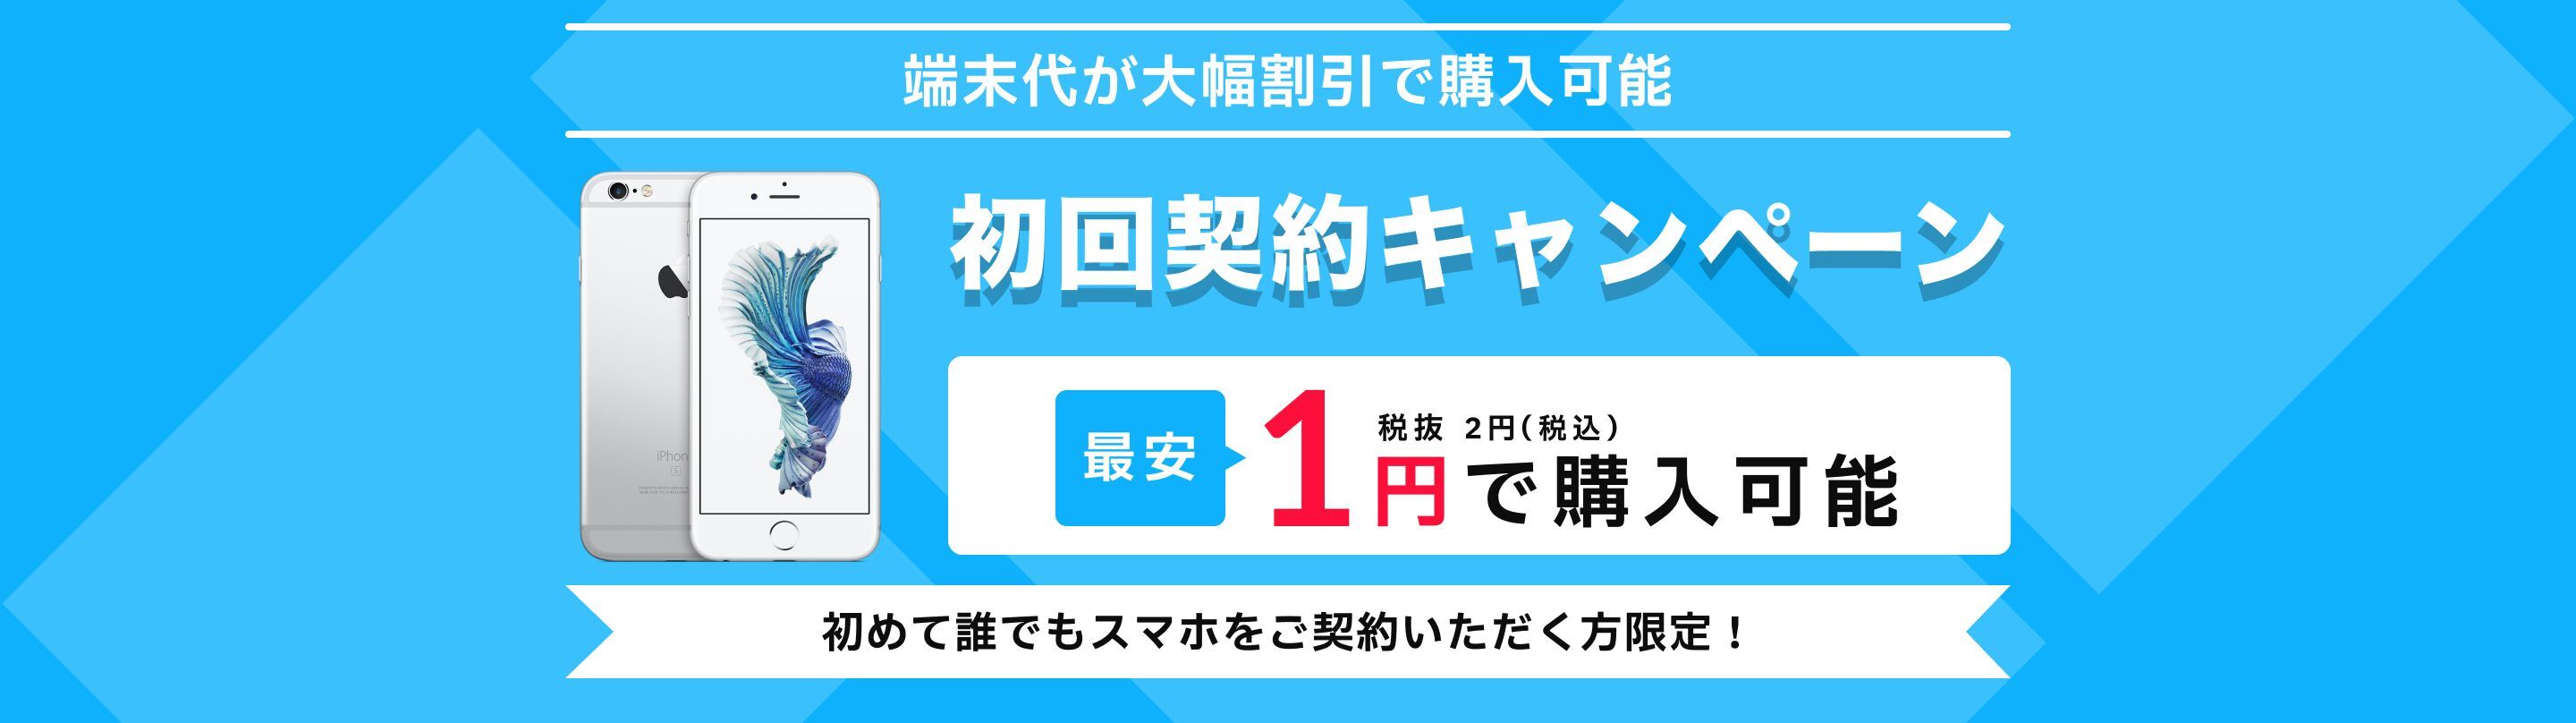 初回契約キャンペーン 1円で購入可能